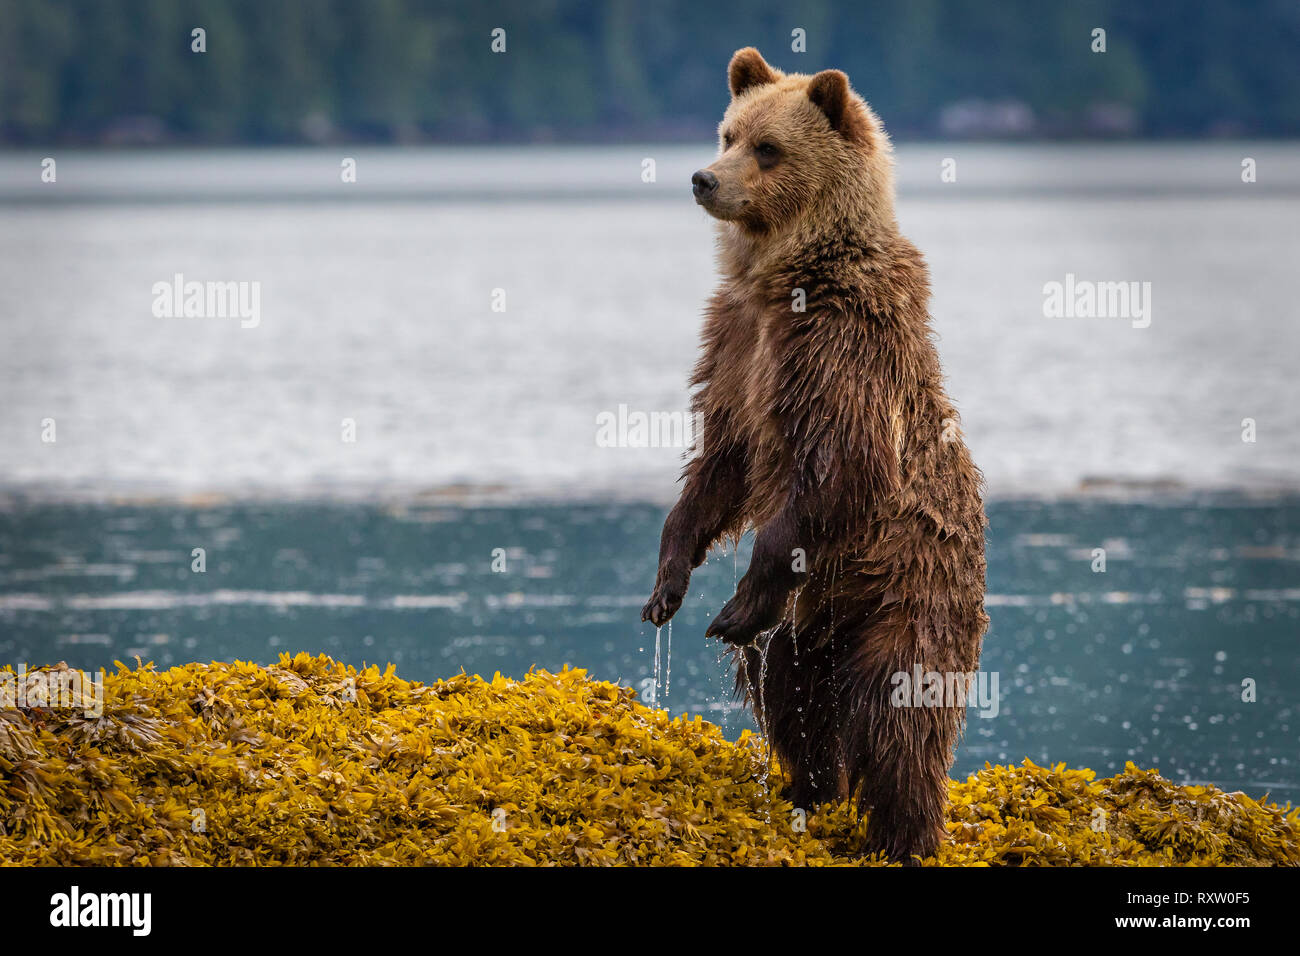 Cute grizzly oso cub de pie en la hierba del mar buscando a mamá a lo largo de la costa en Knight Inlet en la marea baja, Territorio de las primeras Naciones, Columbia Británica, Canadá. Foto de stock